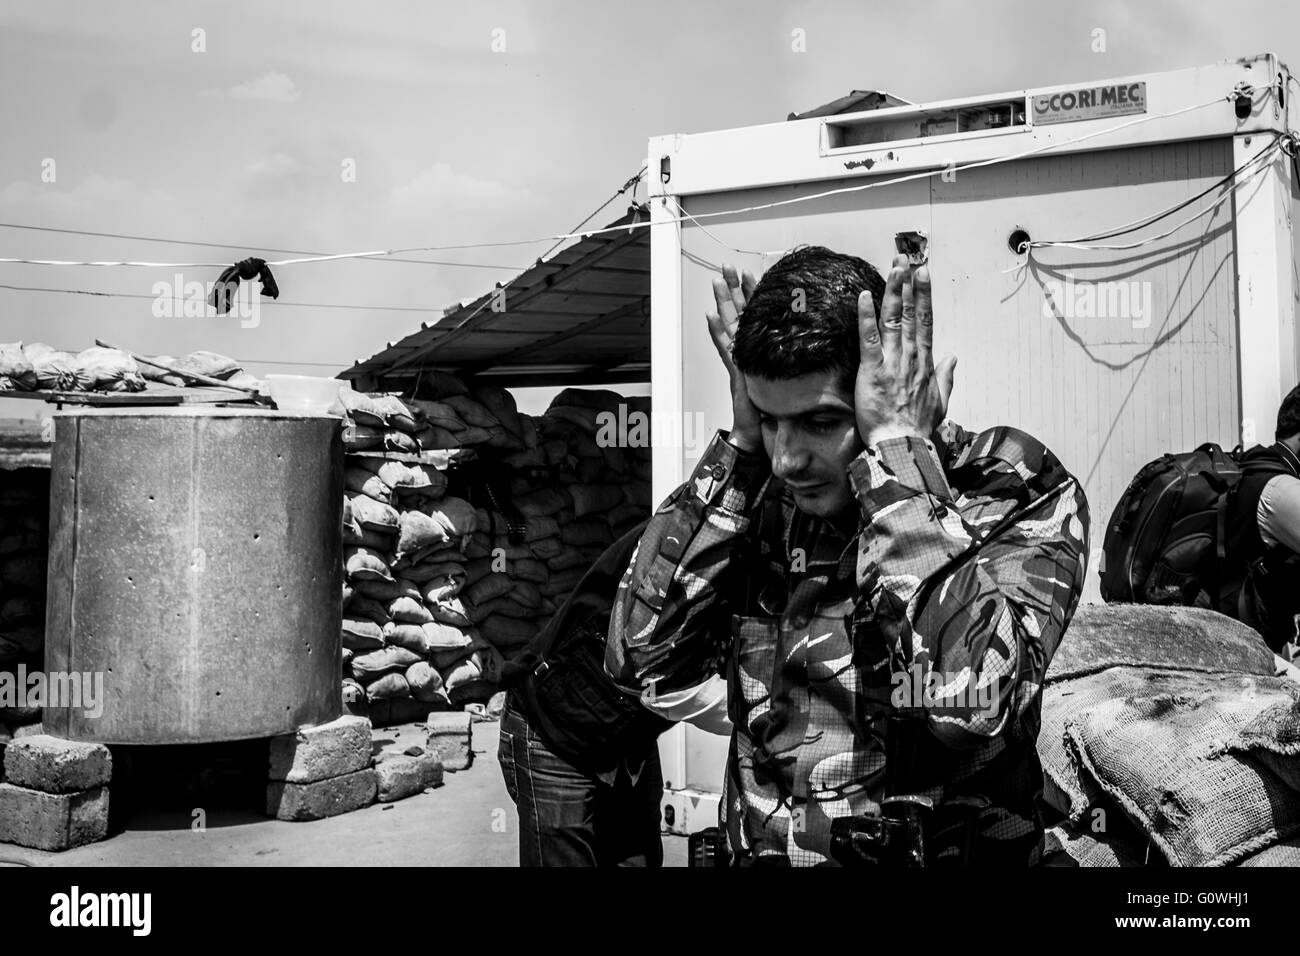 Kurdische Peshmerga Kräfte abgestoßen Dschihad Angriffe auf Abu Shita Dorf - 05.03.2016 - Irak / Erbil / Abu Shita - kurdische Peshmerga Kräfte erfolgreich abgewehrt Dschihad Angriffe auf Abu Shita Dorf in der Nähe der Gwer Front befindet sich im südwestlichen Erbil.  Die Angriffe verursacht schwere Schäden auf islamischer Staat (IS), die die Peshmerga Verteidigungslinie im Bereich infiltrieren soll.    -Alexandre Afonso / Le Pictorium Stockfoto